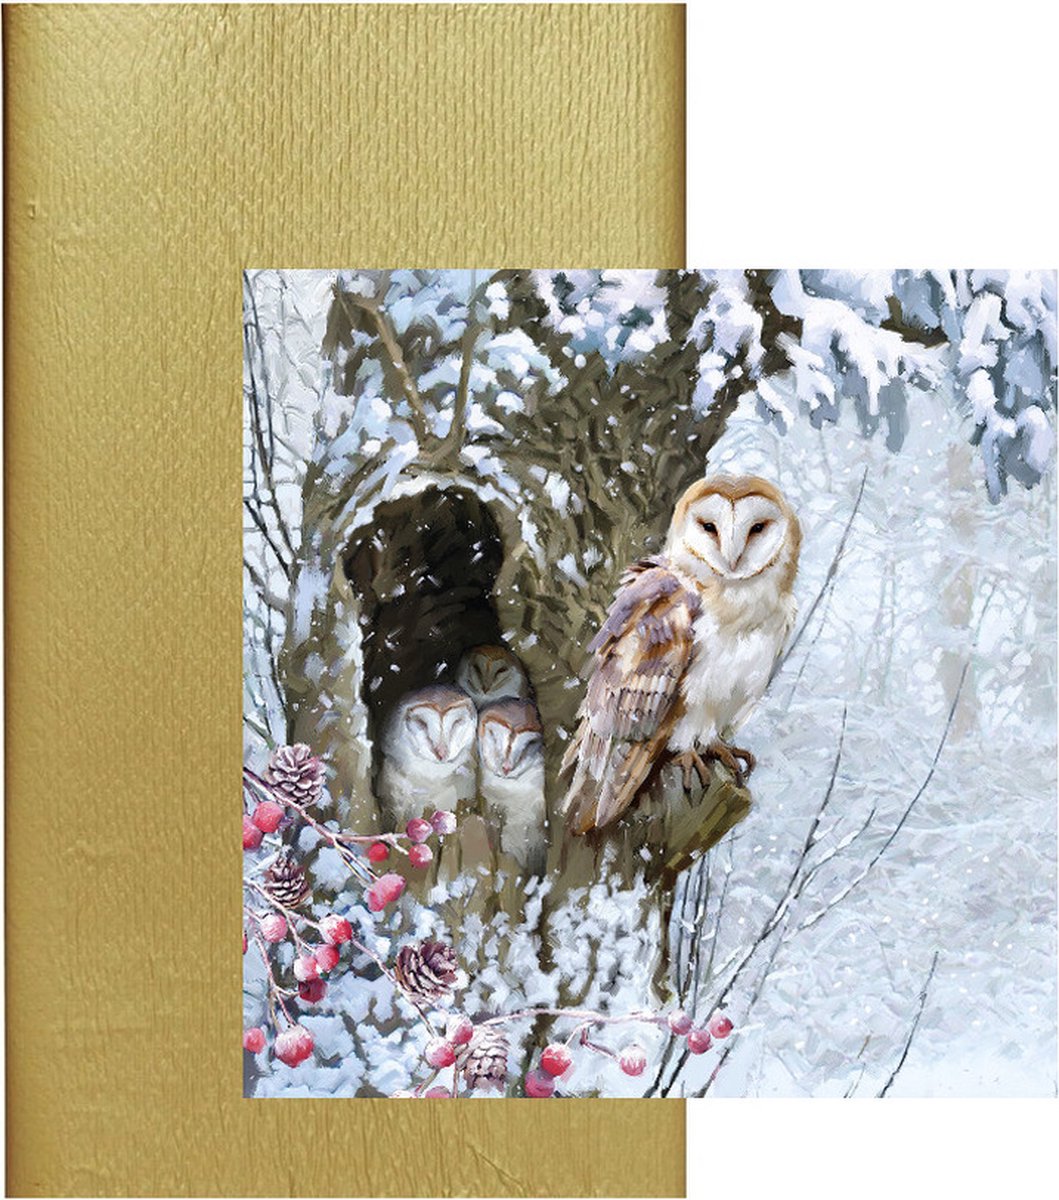 Papieren tafelkleed/tafellaken goud inclusief servetten winter thema